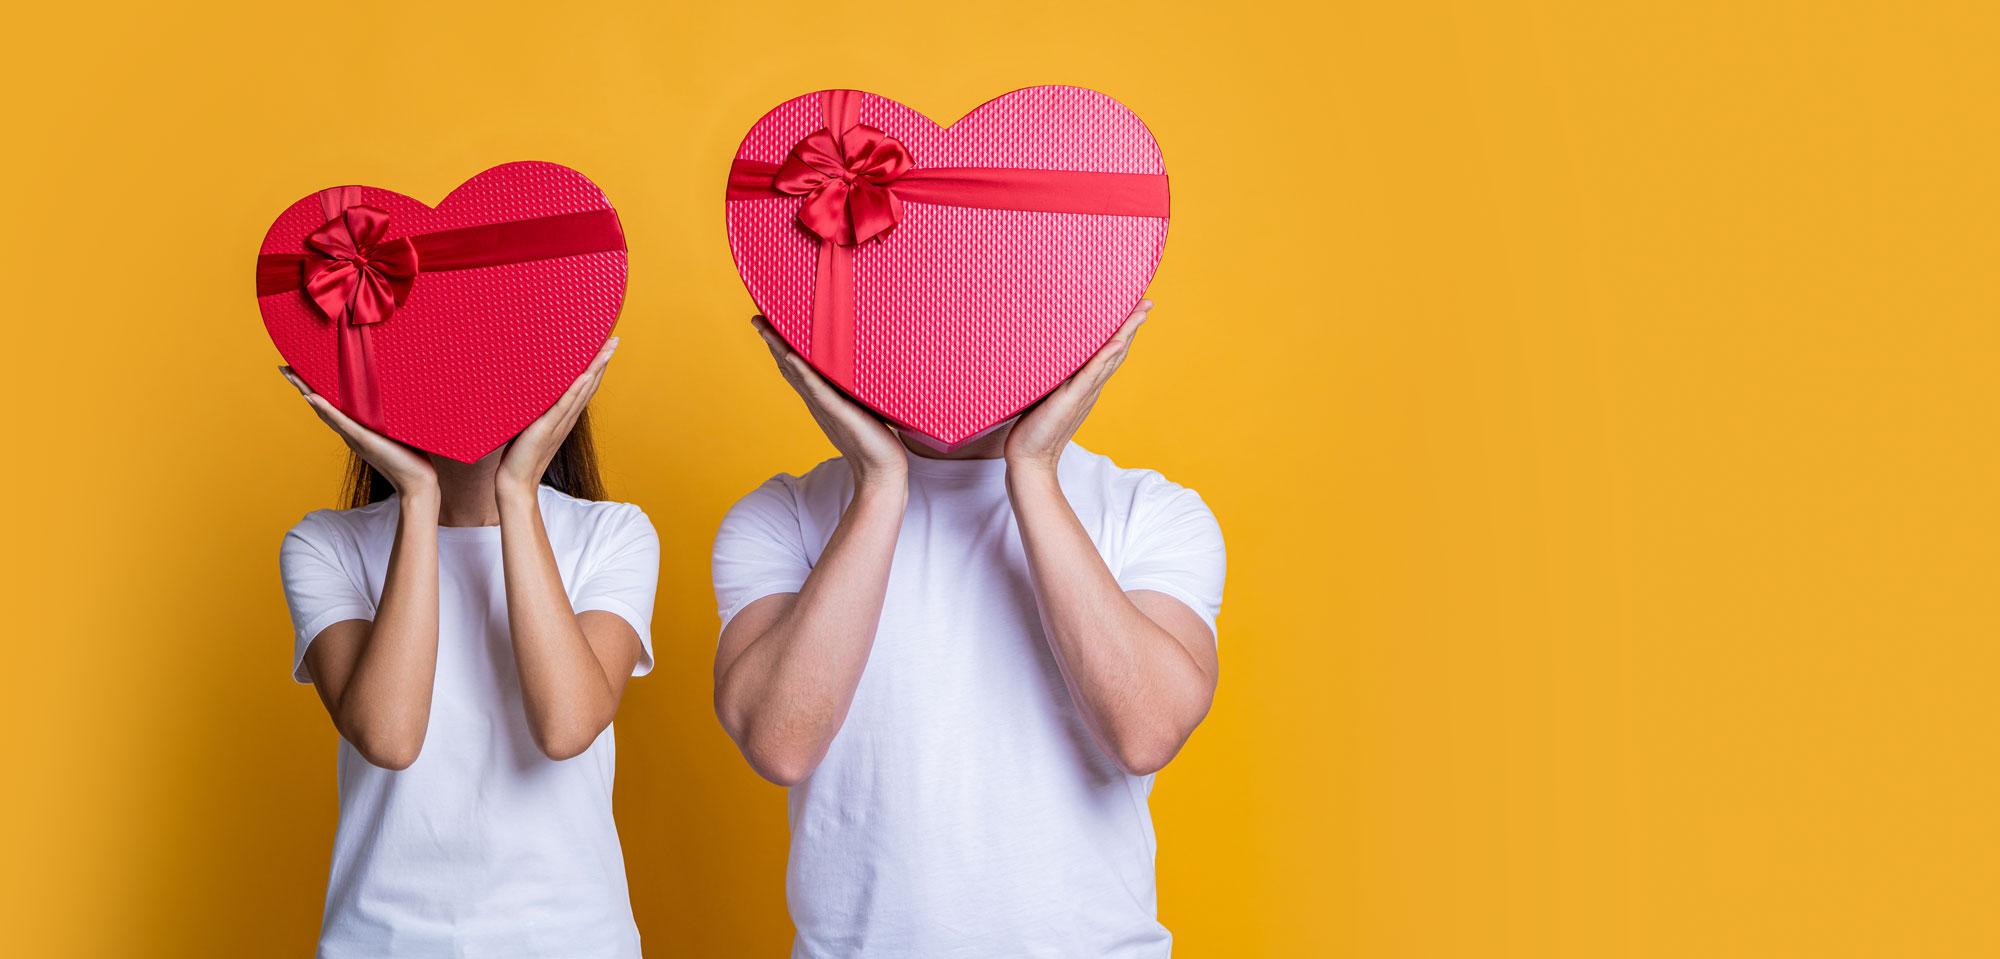 Descubre los regalos originales de San Valentín de Regalaco.com